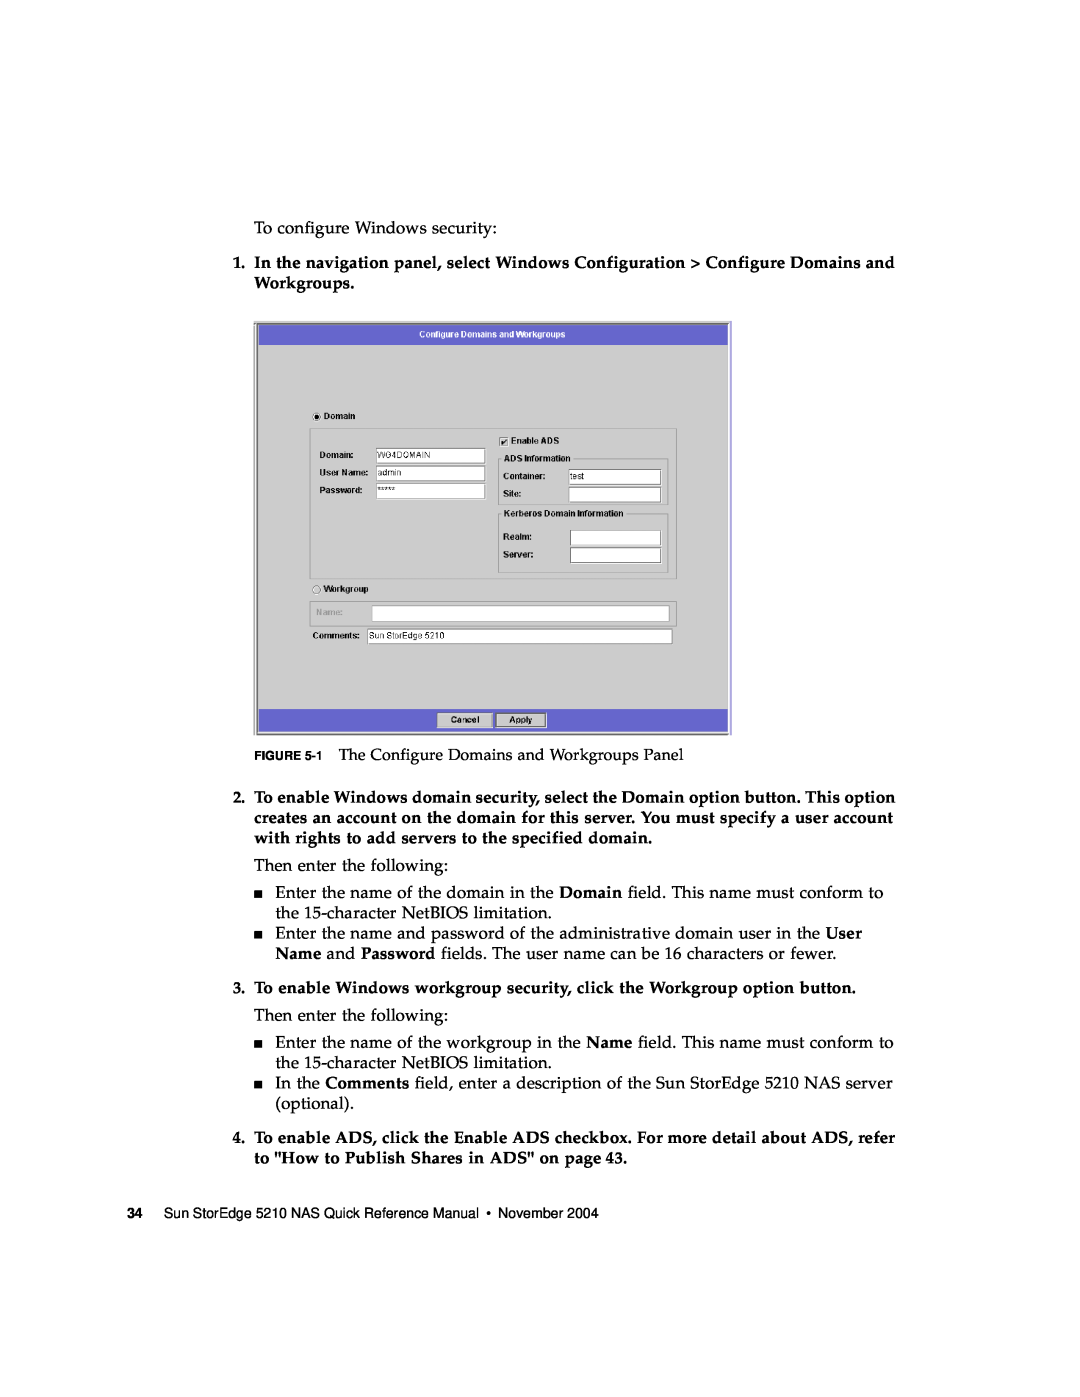 Sun Microsystems 5210 NAS manual To configure Windows security 